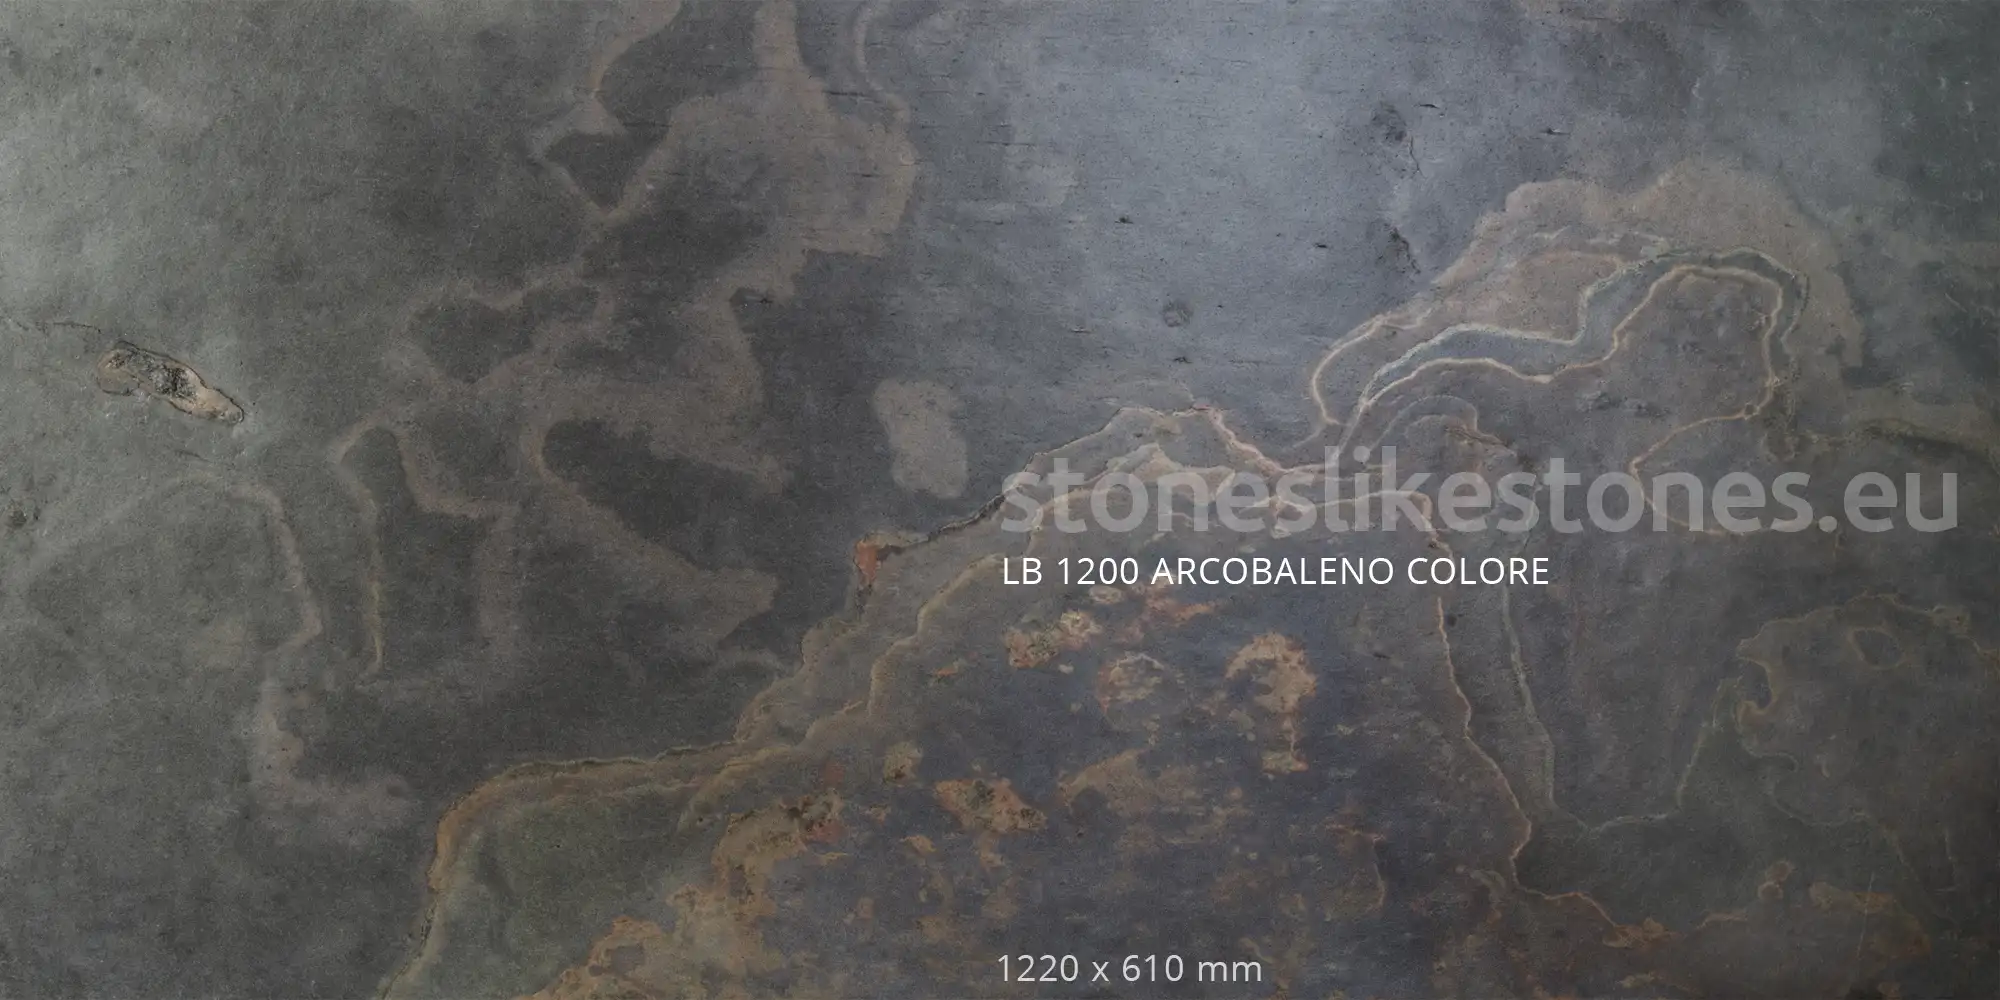 StoneslikeStones Dünnschiefer LB 1200 ARCOBALENO COLORE Buntschiefer – Download mit Rechtsklick